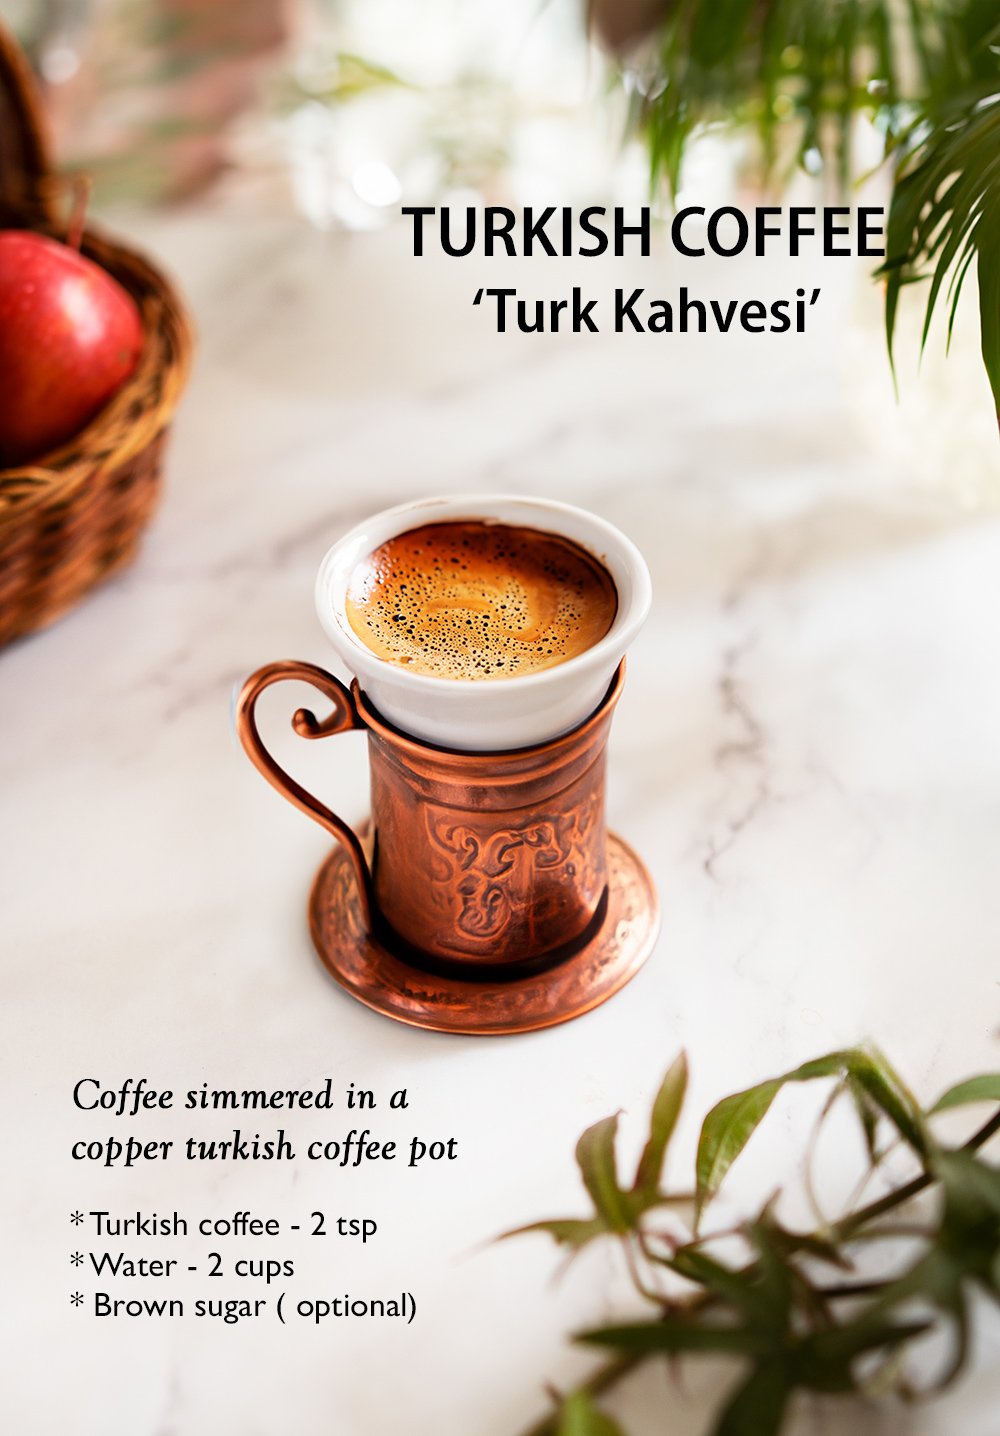  Turkish Coffee ‘Turk Kahvesi’